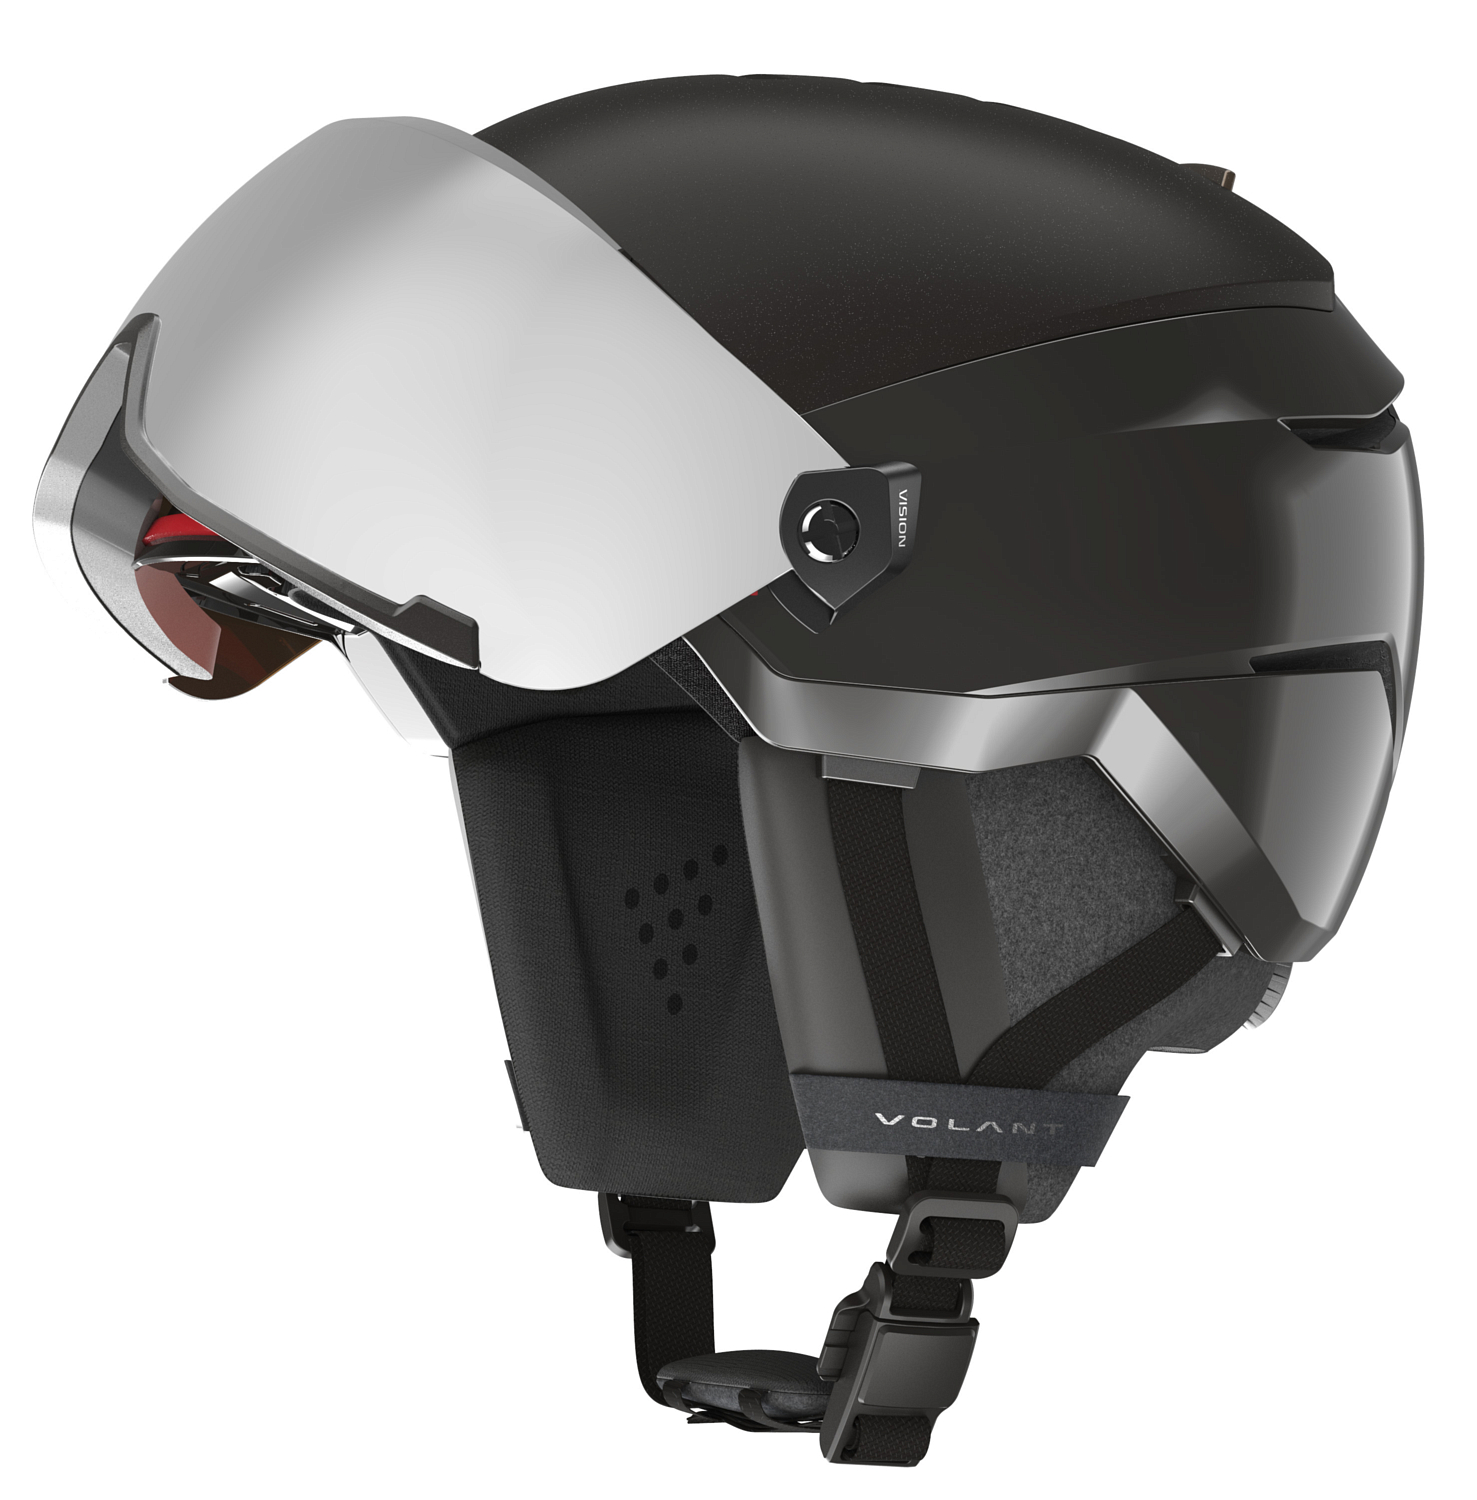 Зимний шлем с визором ATOMIC Volant Amid Visor Hd Plus Black